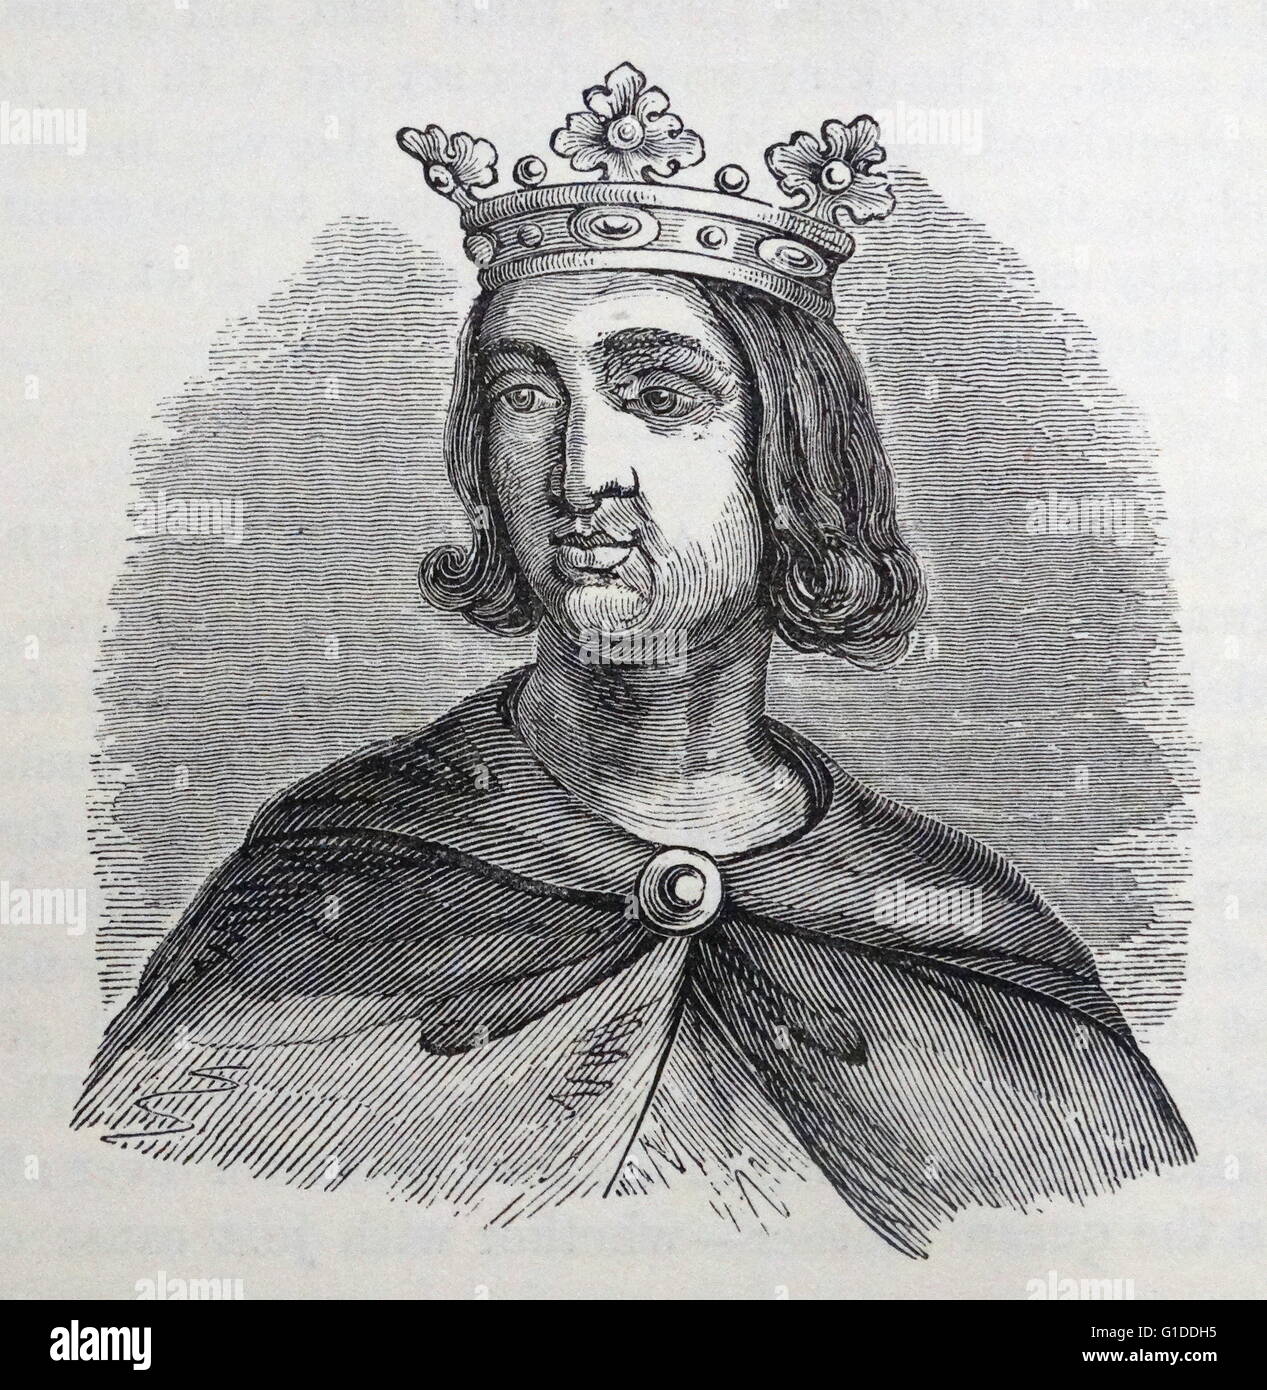 Portrait de Philippe VI de France (1293-1350) le premier roi de France de la maison de Valois. En date du 14e siècle Banque D'Images